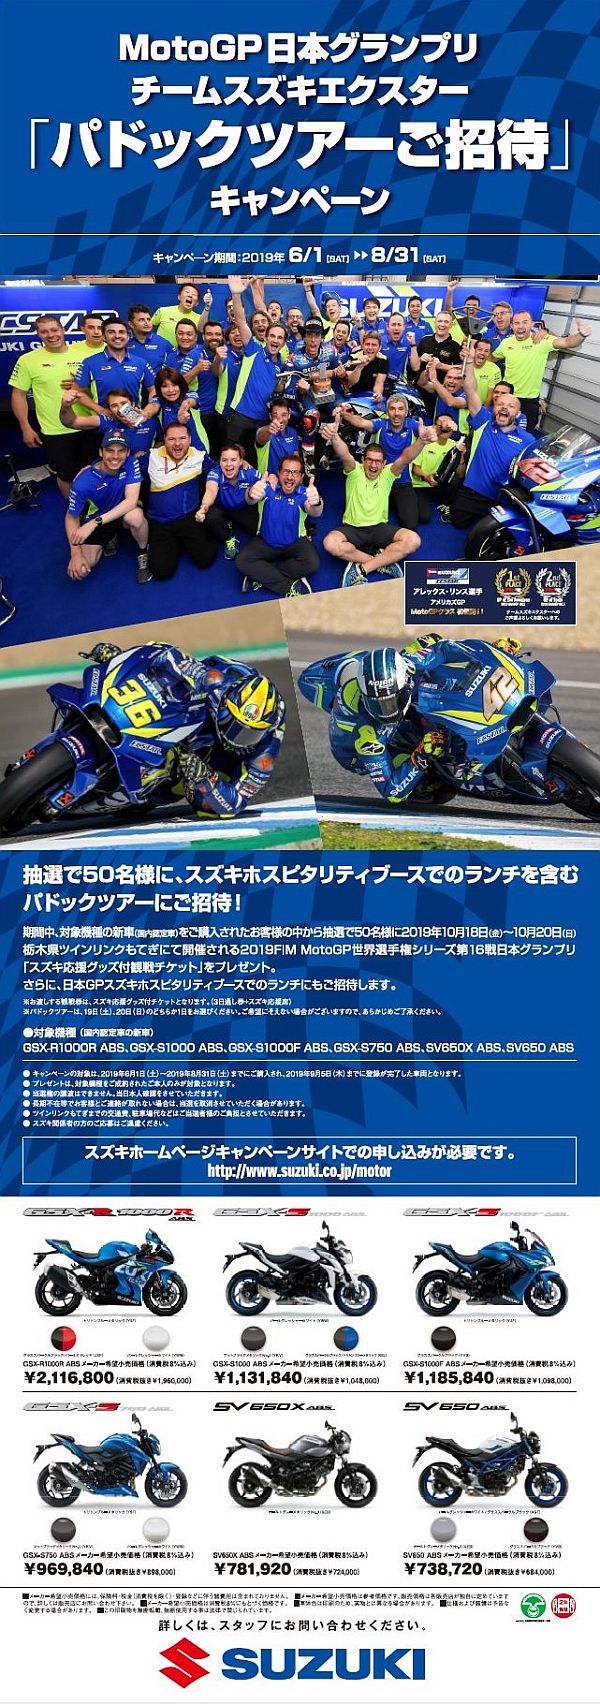 スズキ Motogp日本グランプリ チームスズキエクスター パドックツアーご招待 キャンペーン を実施 Web Mr Bike